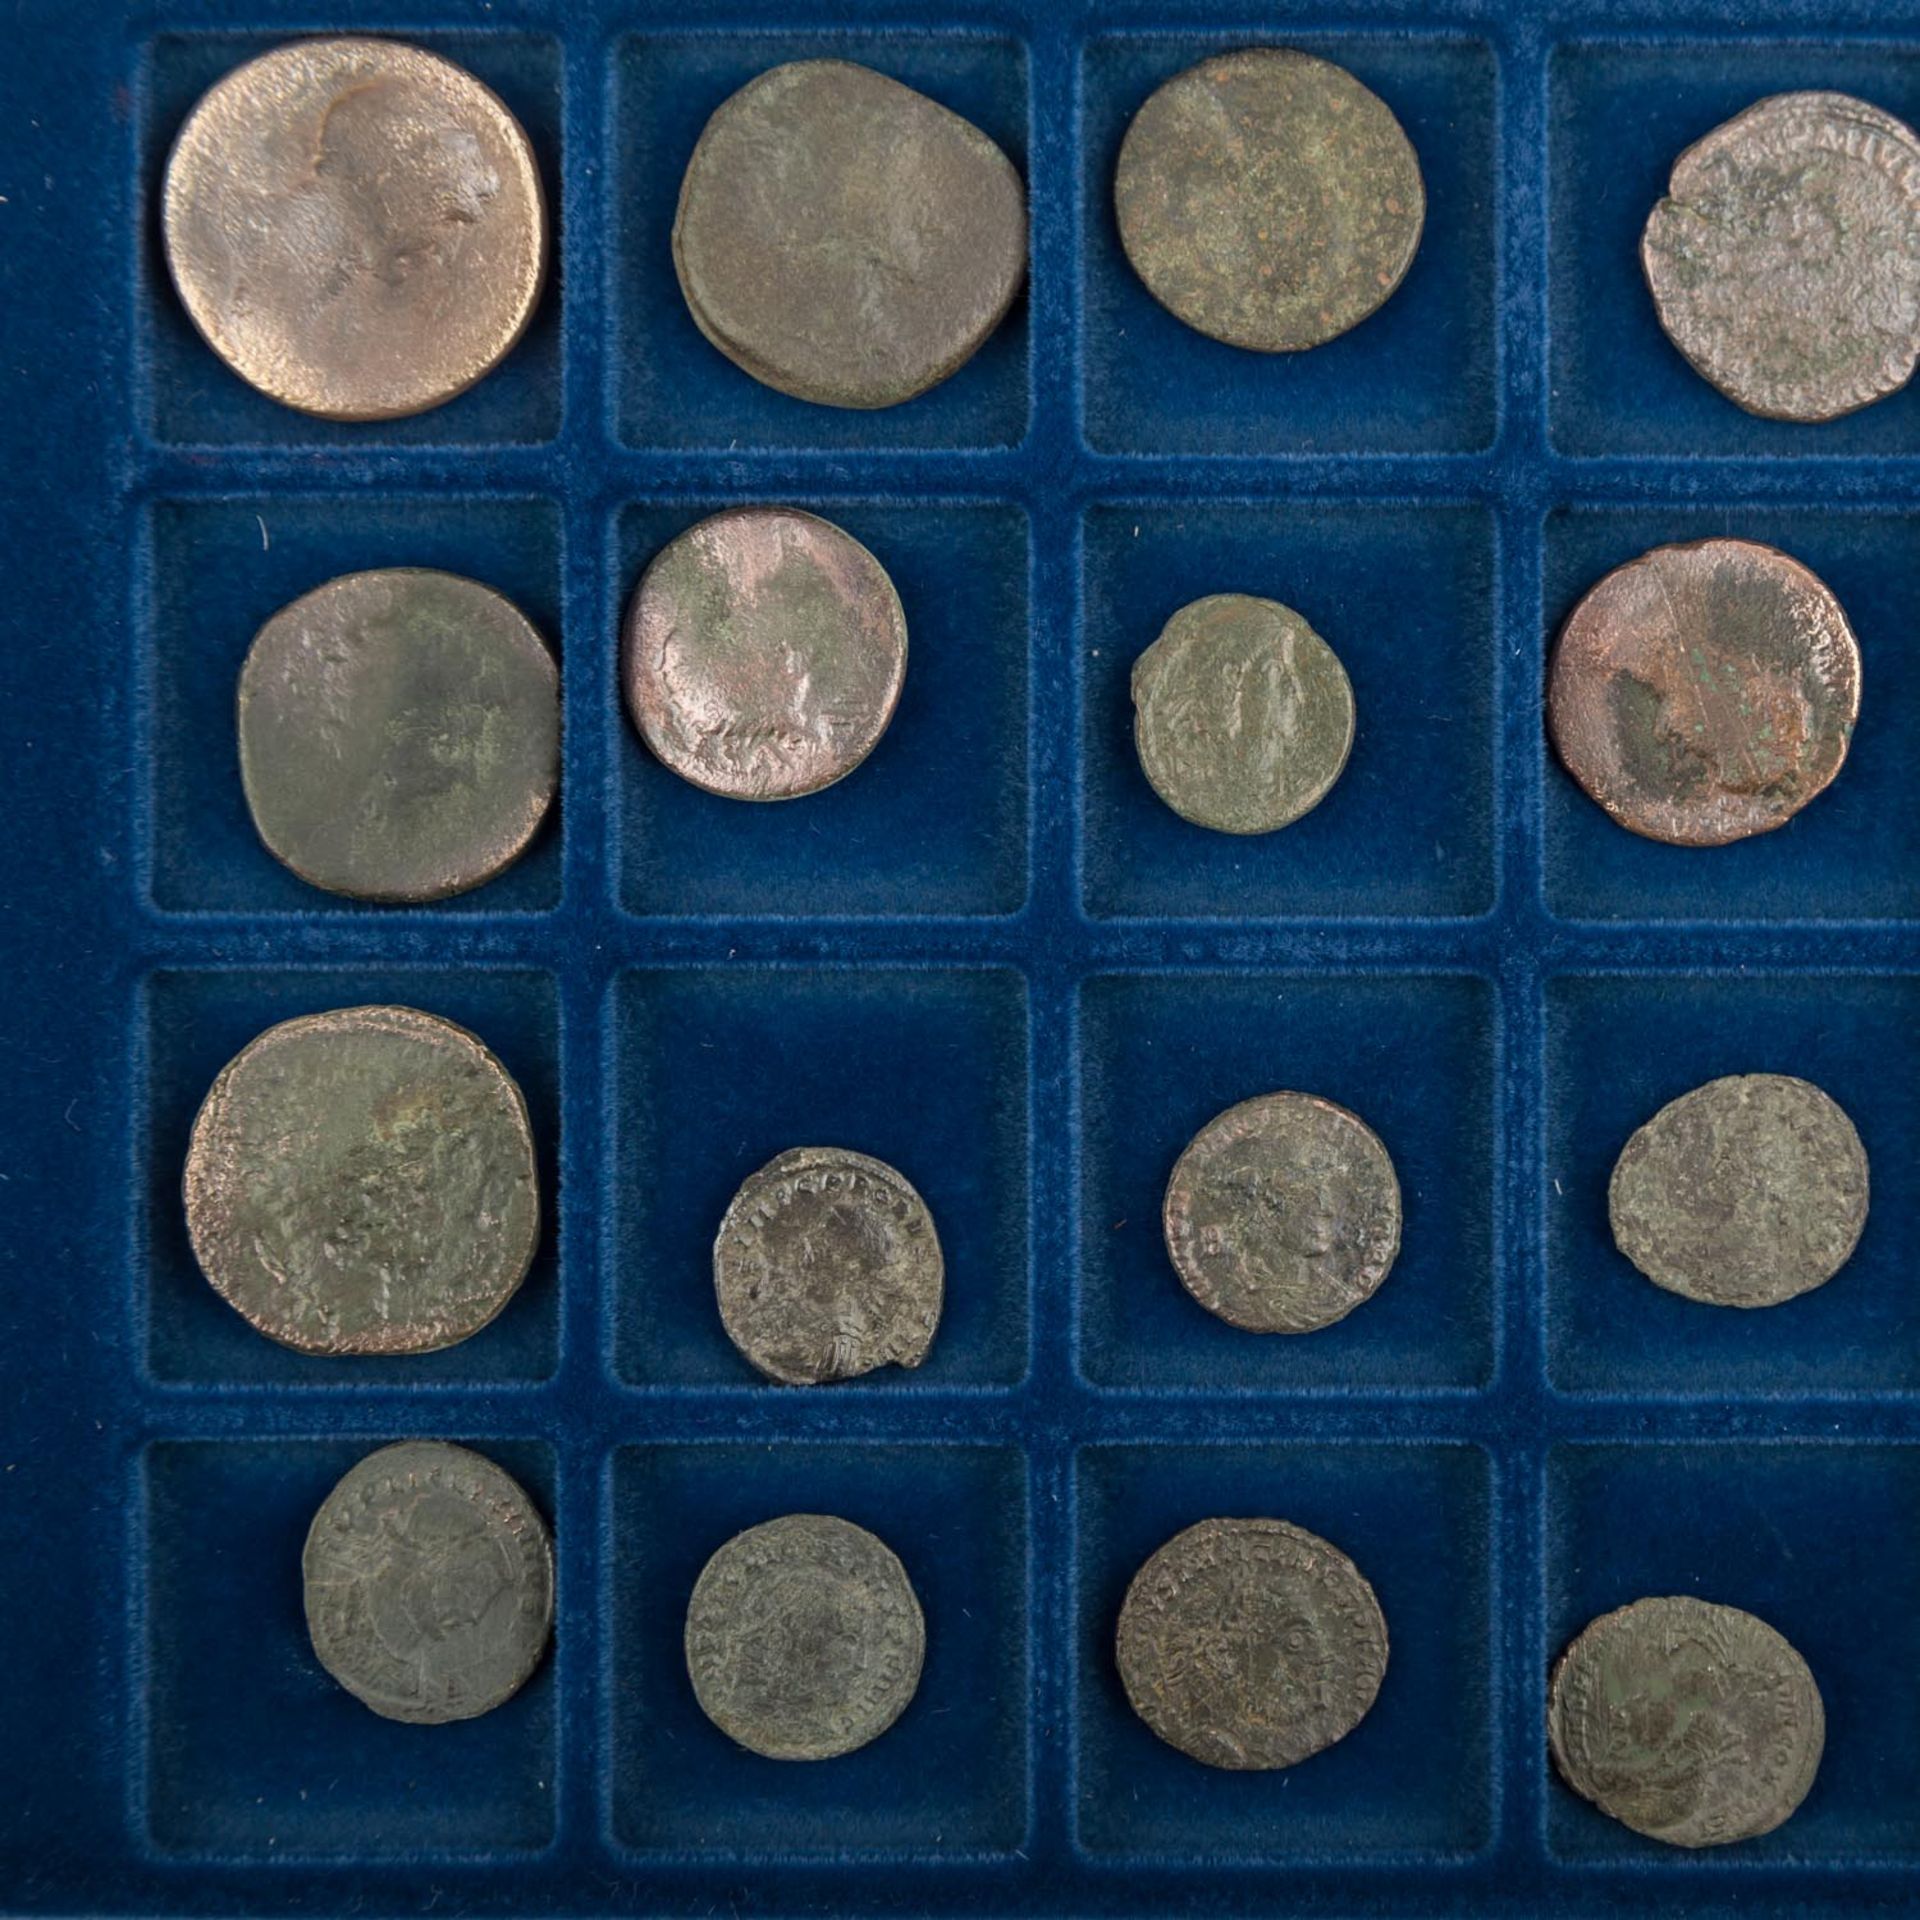 Tableau mit römischen Münzen - 20 antike und spätantikeBronzen. Erhalt jeweils verschieden, z.T. bis